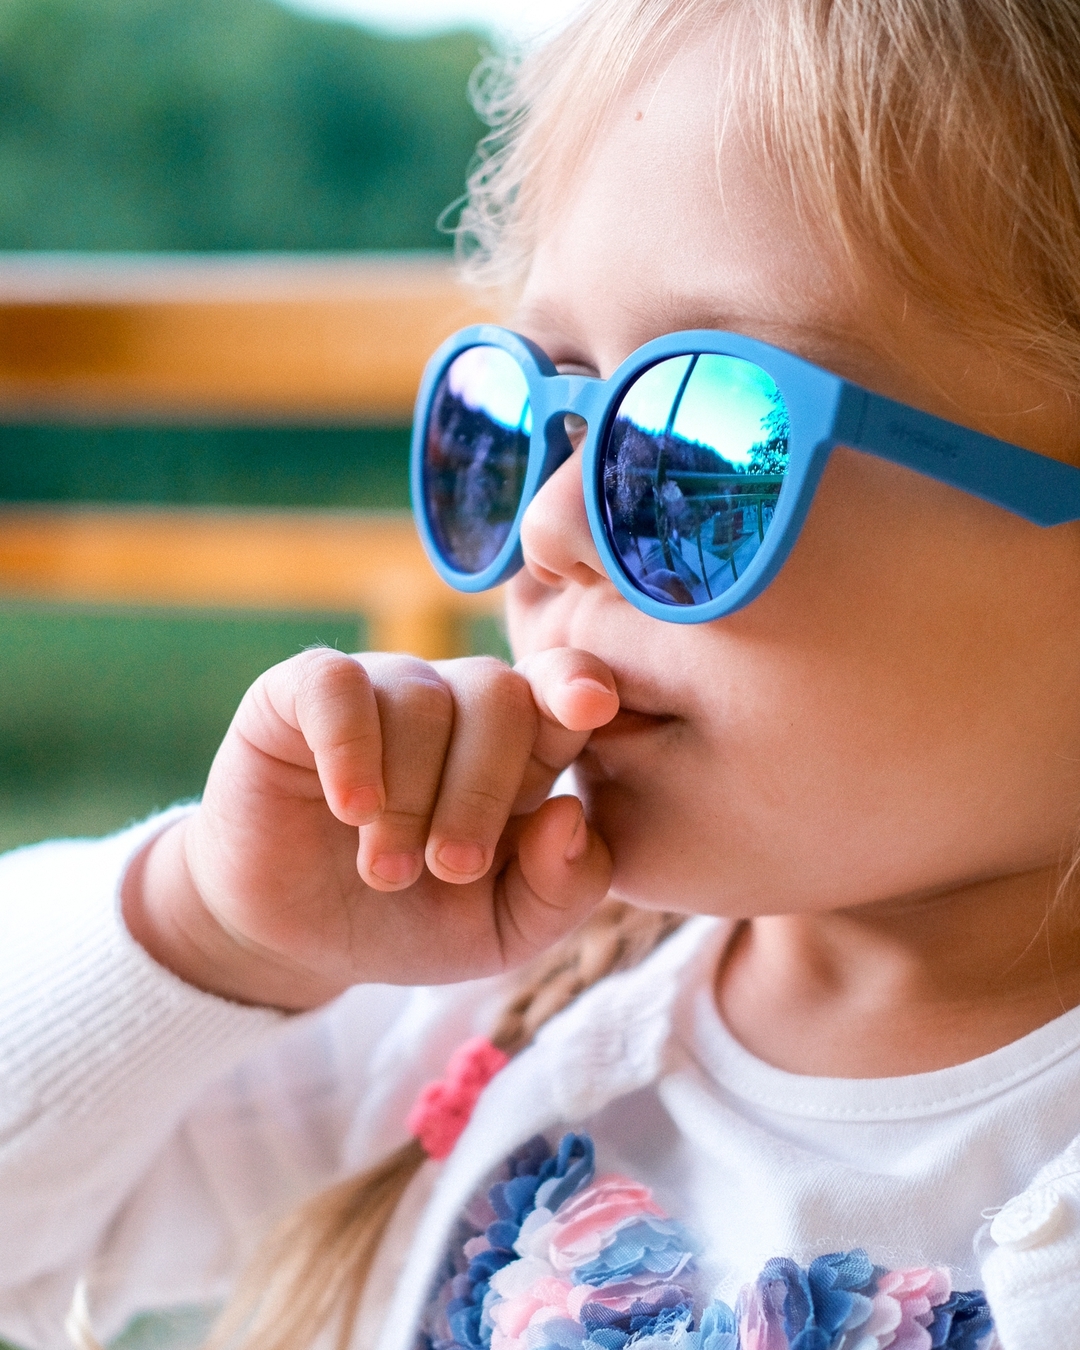 Оптика Кронос - Как выбрать солнцезащитные очки для малыша?👧👦
⠀
👉Аксессуар обязательно должен иметь степень защиты от УФ-лучей не меньше, чем UV-400.
⠀
👉 Дети очень активны и много двигаются, поэтому...